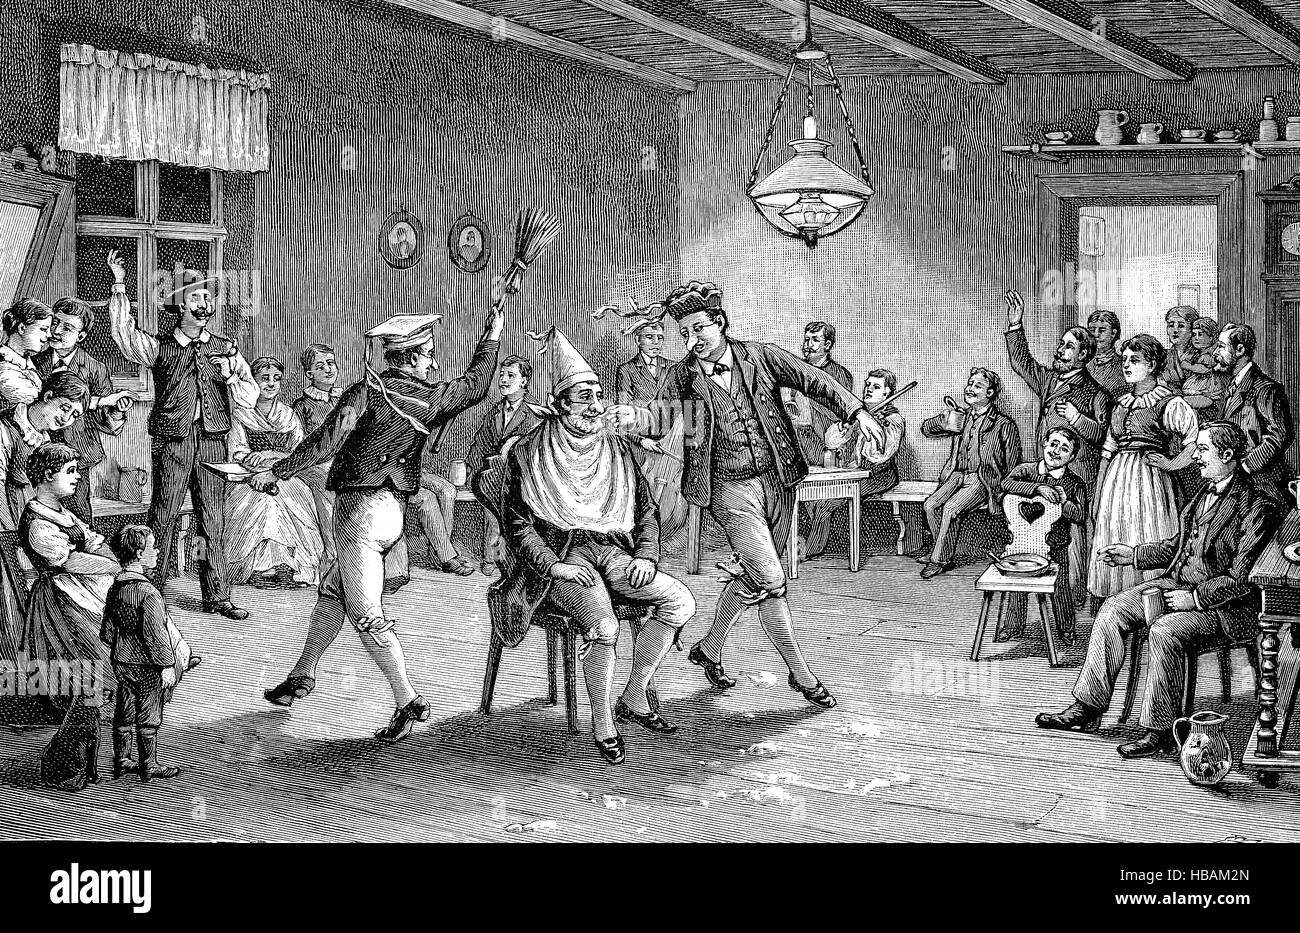 der Barbier-Tanz, ein alter Brauch in Pommern, historische Darstellung aus dem Jahr 1880 Stockfoto